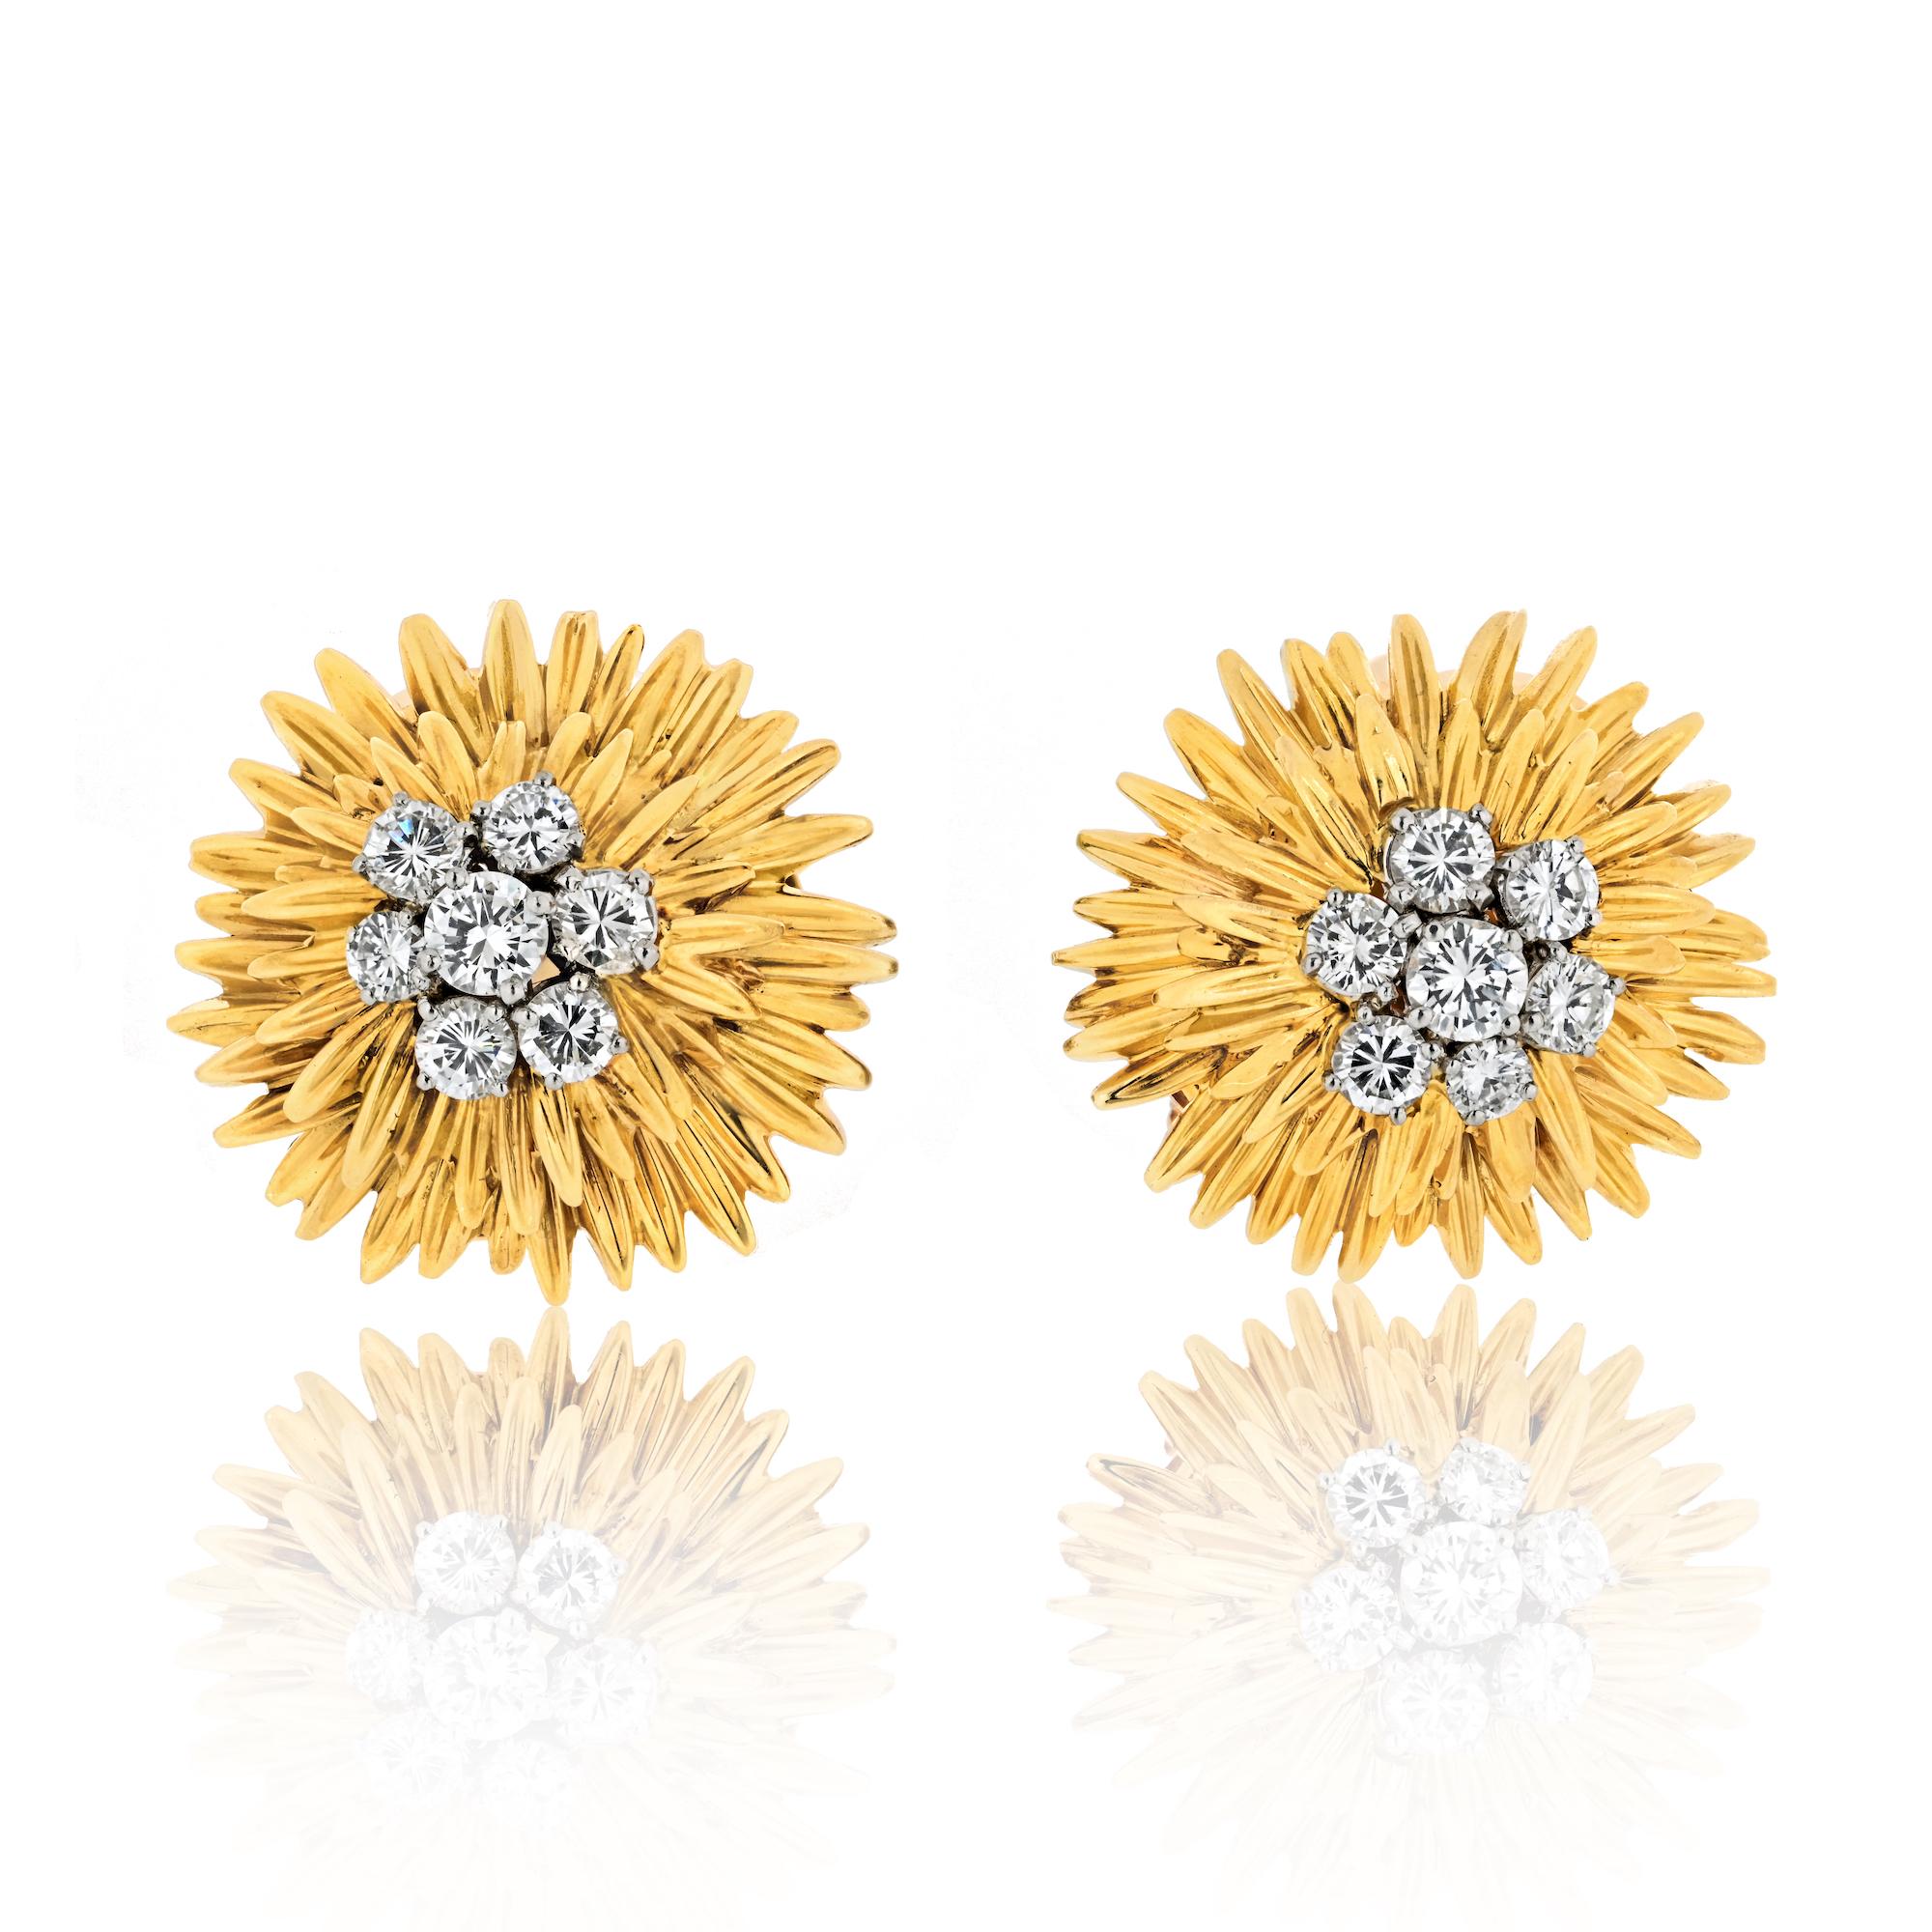 Boucles d'oreilles fleurs en or 18k et diamants Van Cleef & Arpels. Les centres des boucles d'oreilles sont sertis de 14 diamants ronds de taille brillant d'un poids total de
entouré de deux rangées de pétales en or jaune ciselé. Équipé de pinces